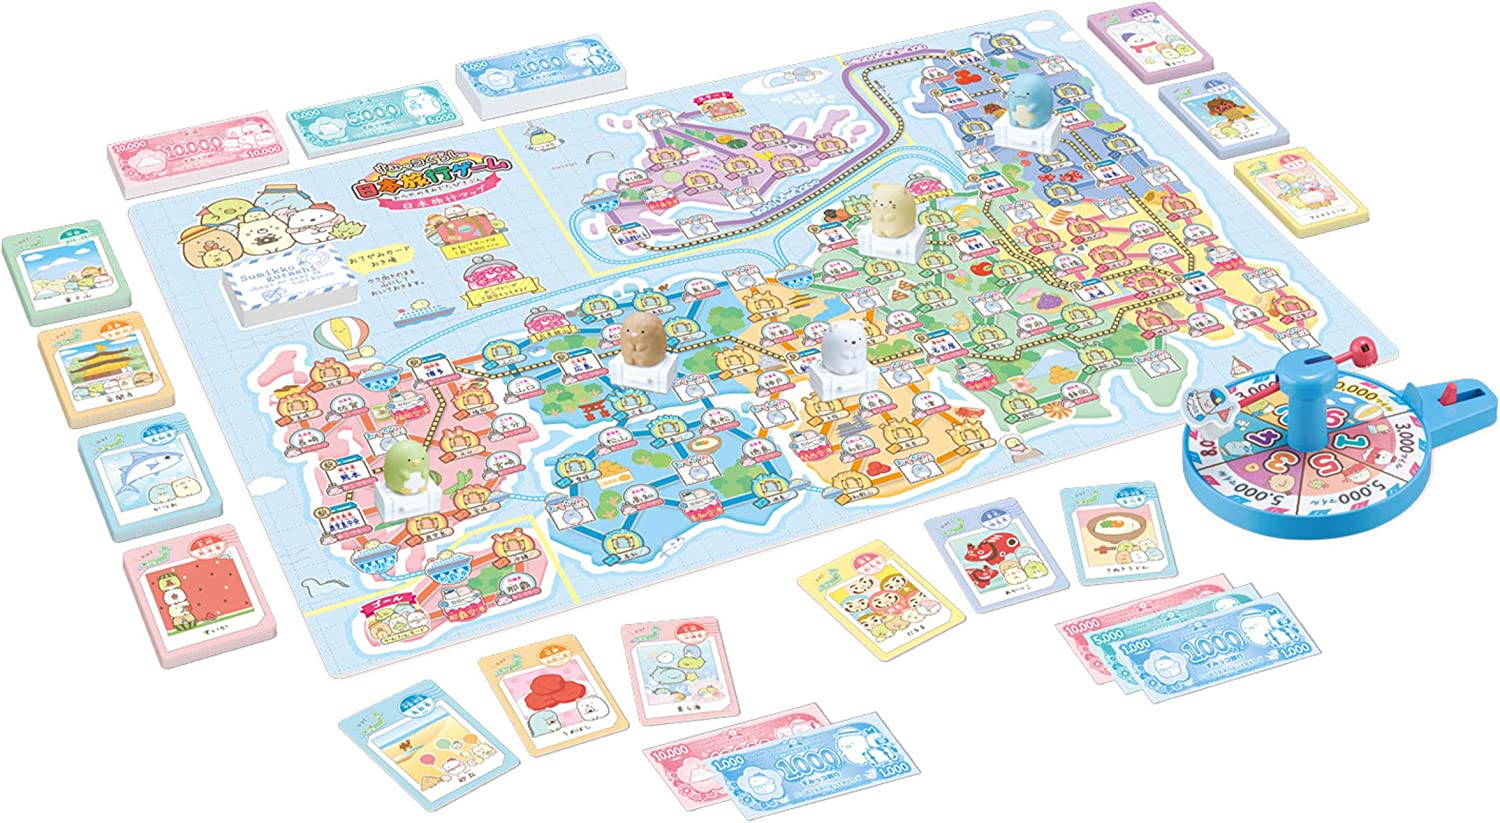 すみっコたちと旅行するボードゲーム「すみっコぐらし 日本旅行ゲーム